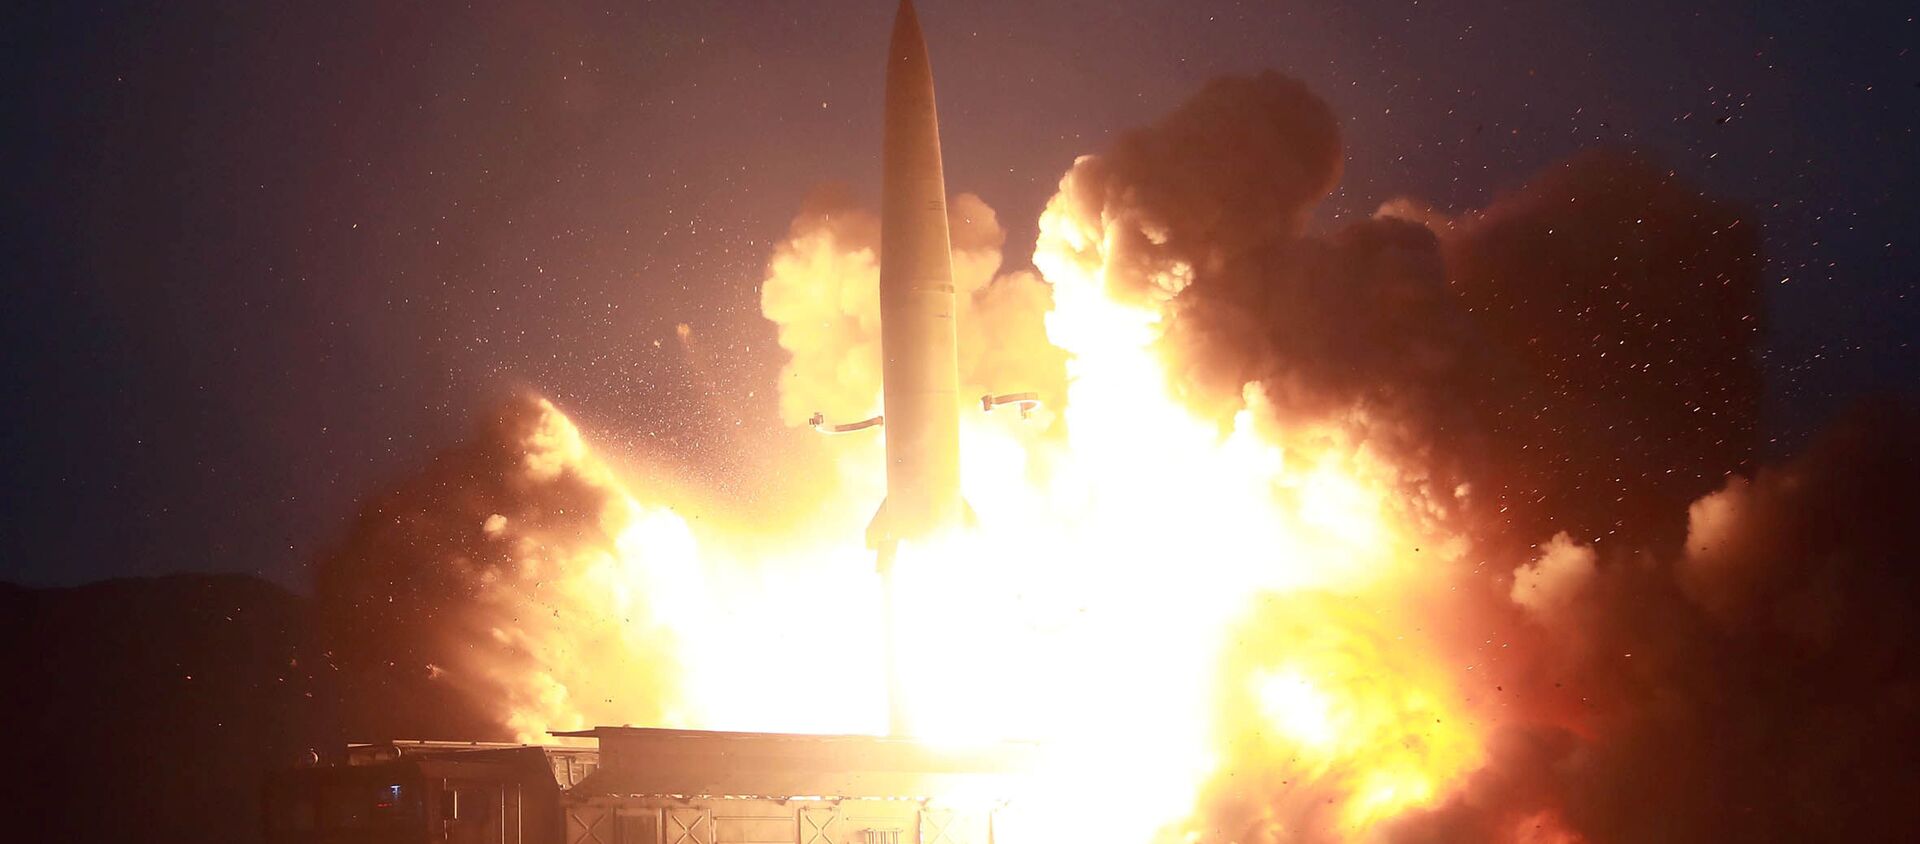  كوريا الشمالية - إطلاق نوع جديد من الصواريخ التكتيكية الموجهة، 7 أغسطس/ آب 2019 - سبوتنيك عربي, 1920, 13.09.2021